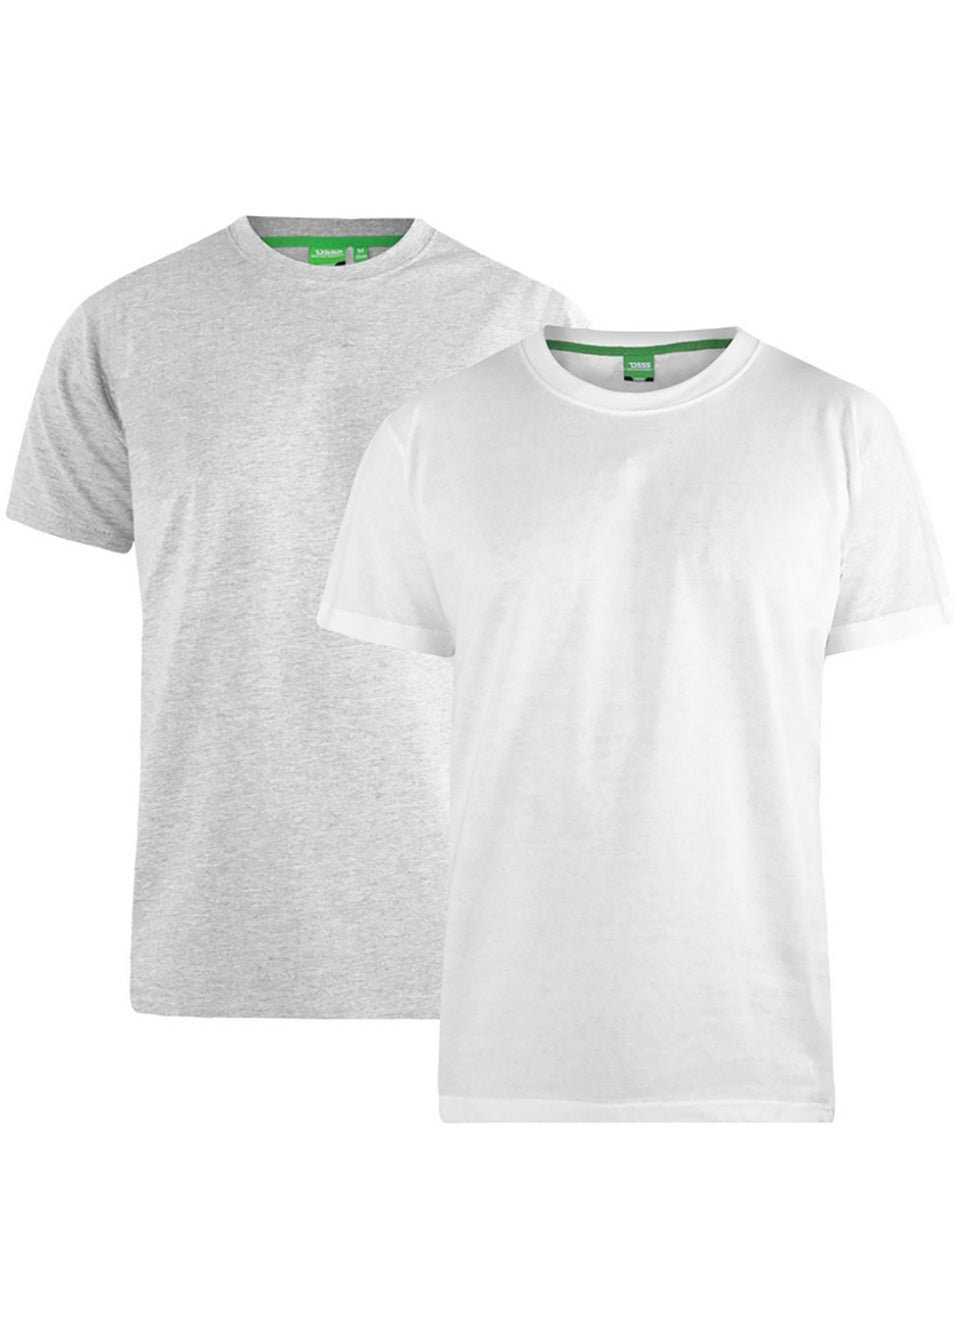 Duke Grey/White Fenton Kingsize Round Neck T-shirts (Pack of 2)